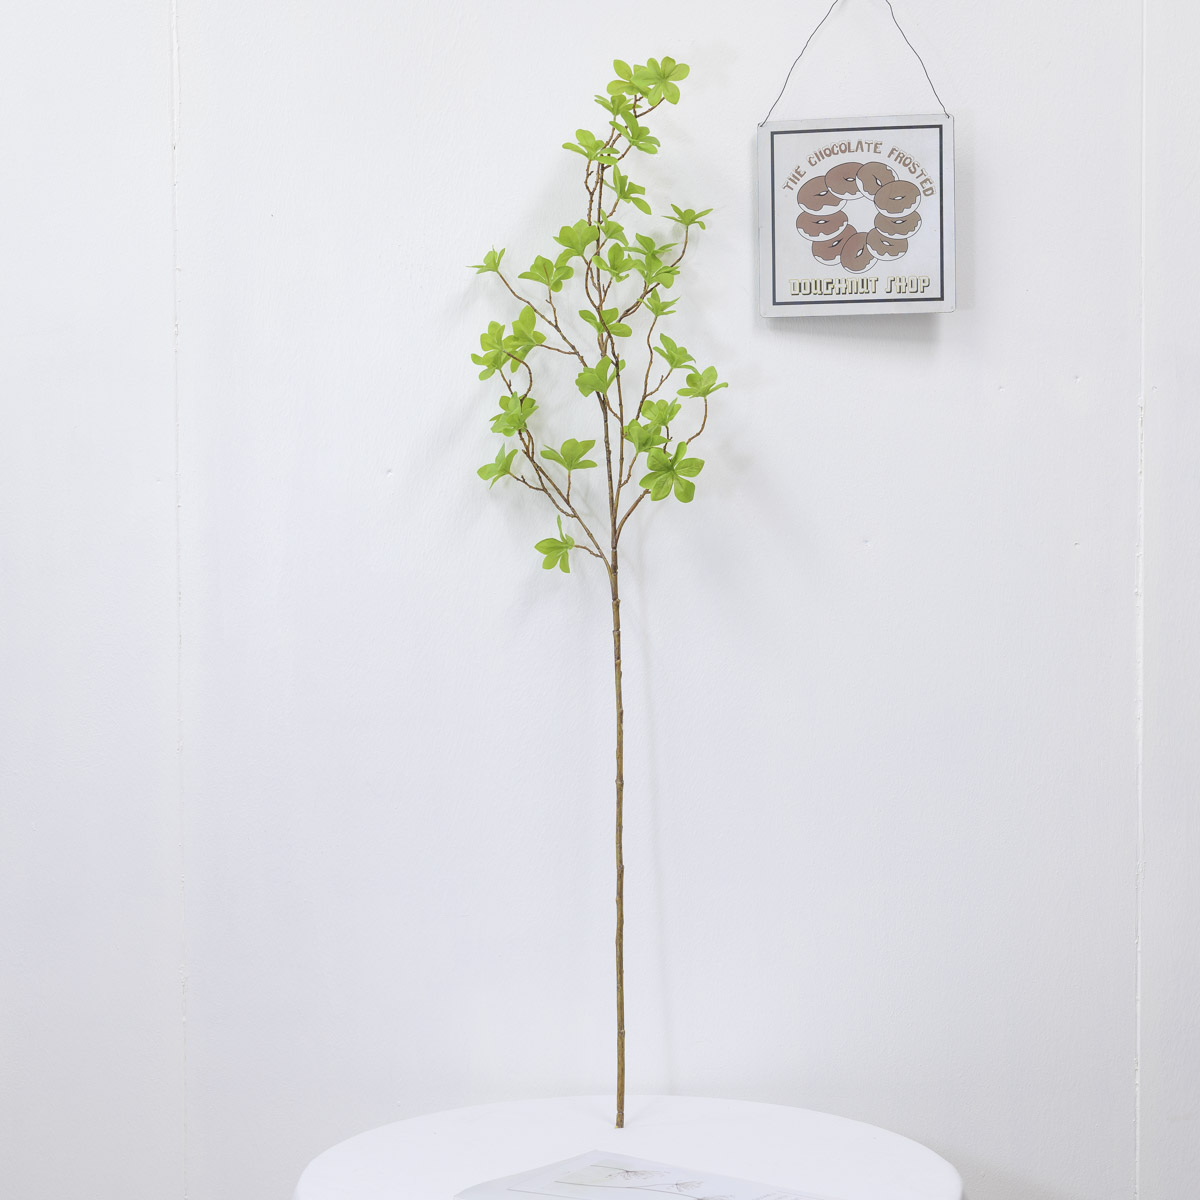 엔키안투스 나무 가지 110cm, 엔카이셔스 잎사귀 나뭇가지 상품 다중이미지 썸네일